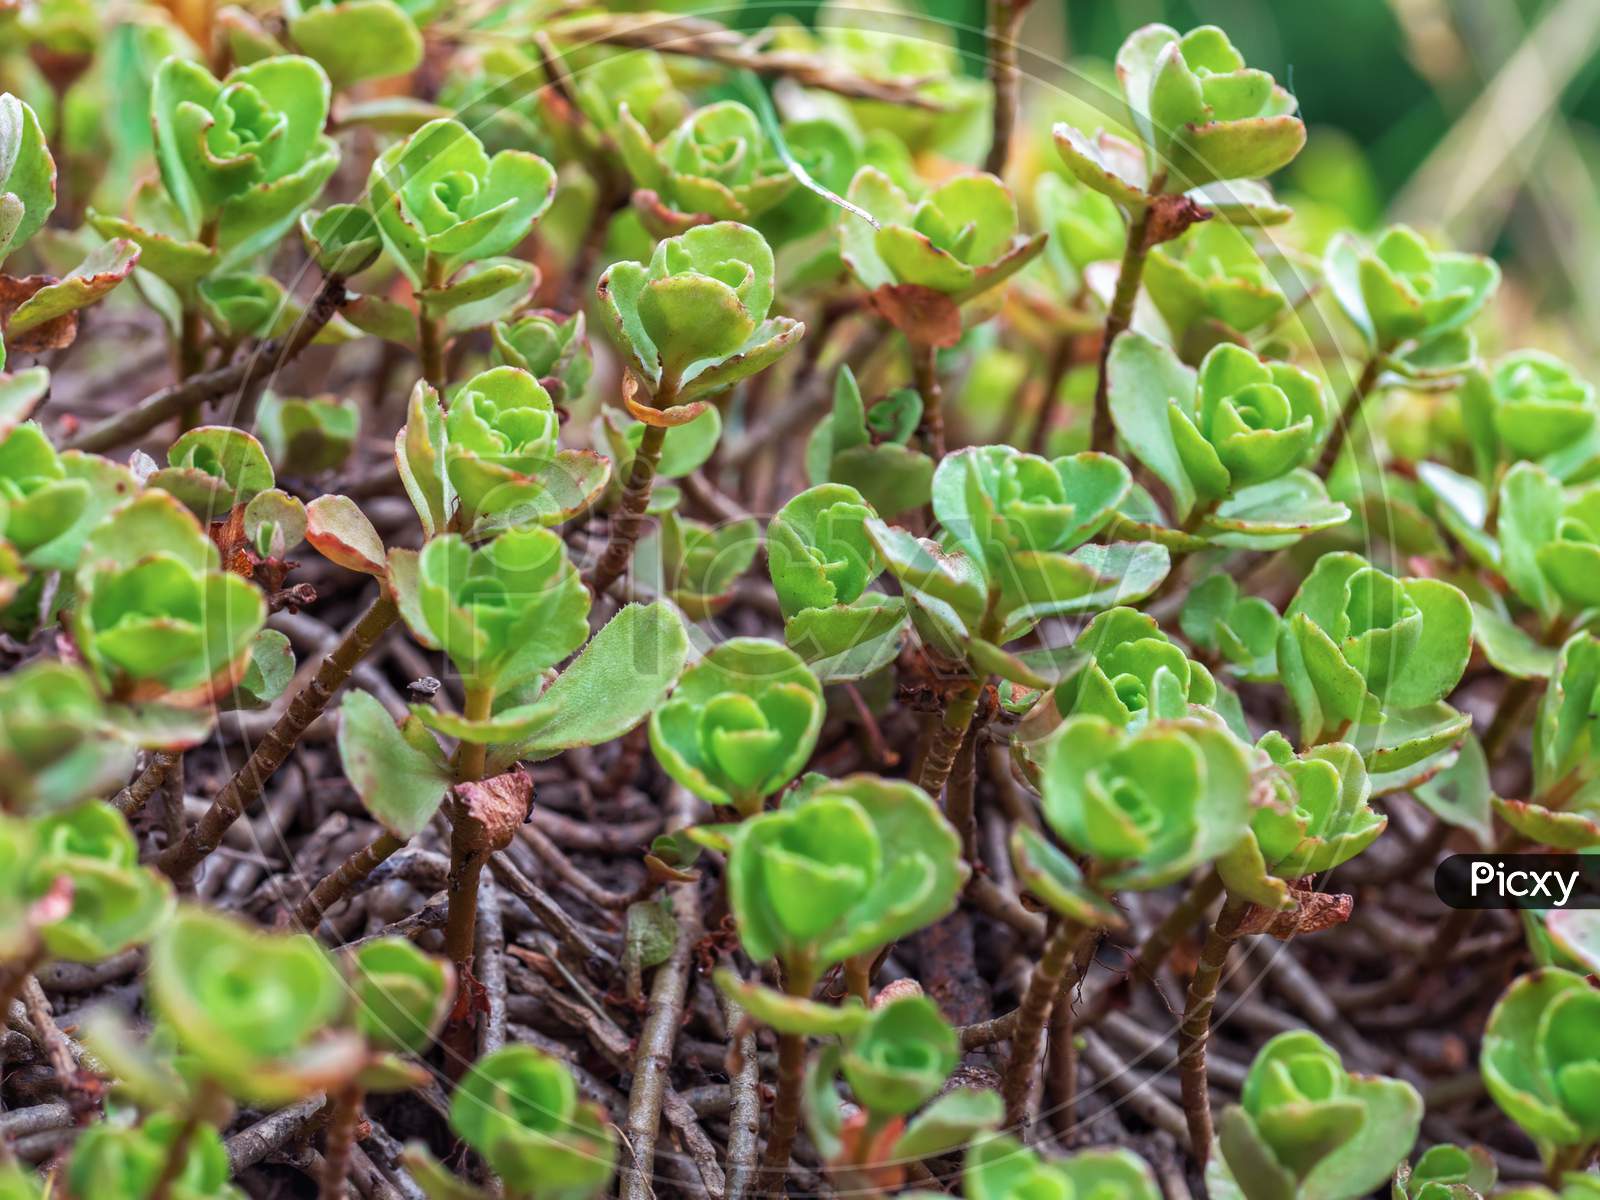 Close-Up Of Caucasian Stonecrop Or Two-Row Stonecrop Leaves (Sedum Spurium).